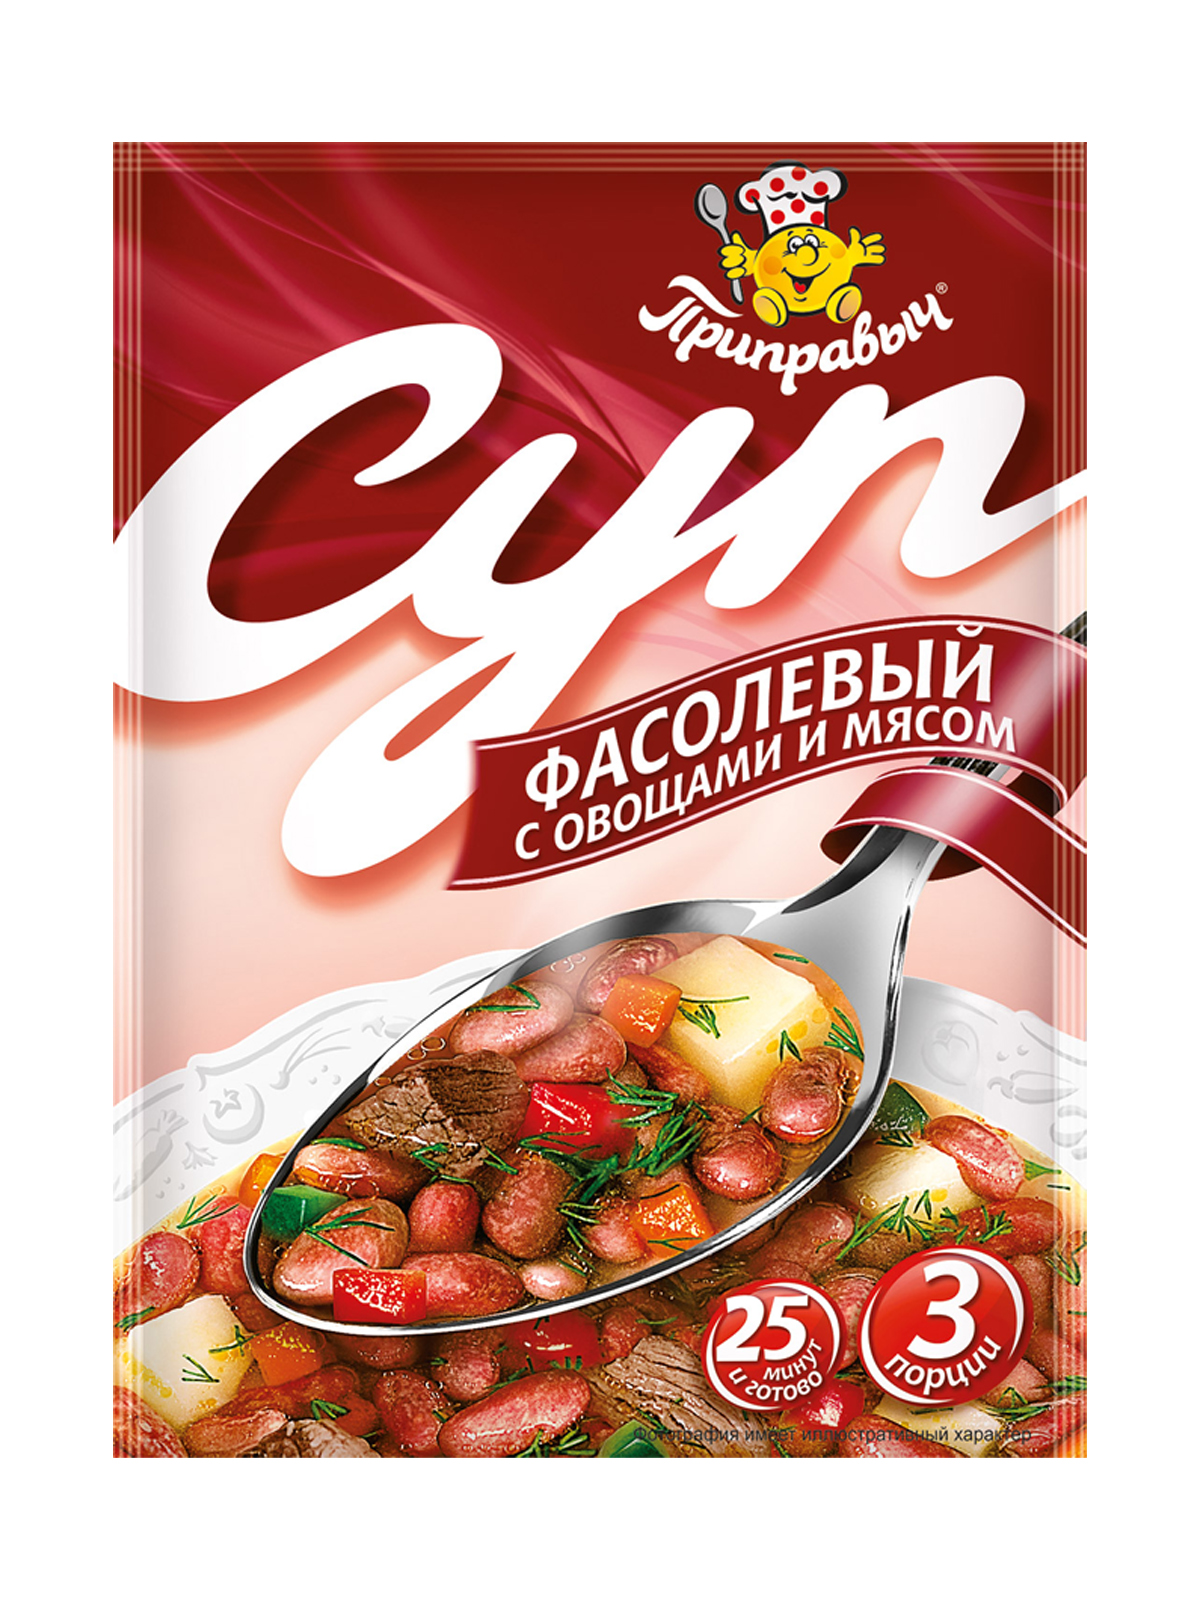 Суп Фасолевый с овощами и мясом,Приправыч, 8 шт. по 60 гр.